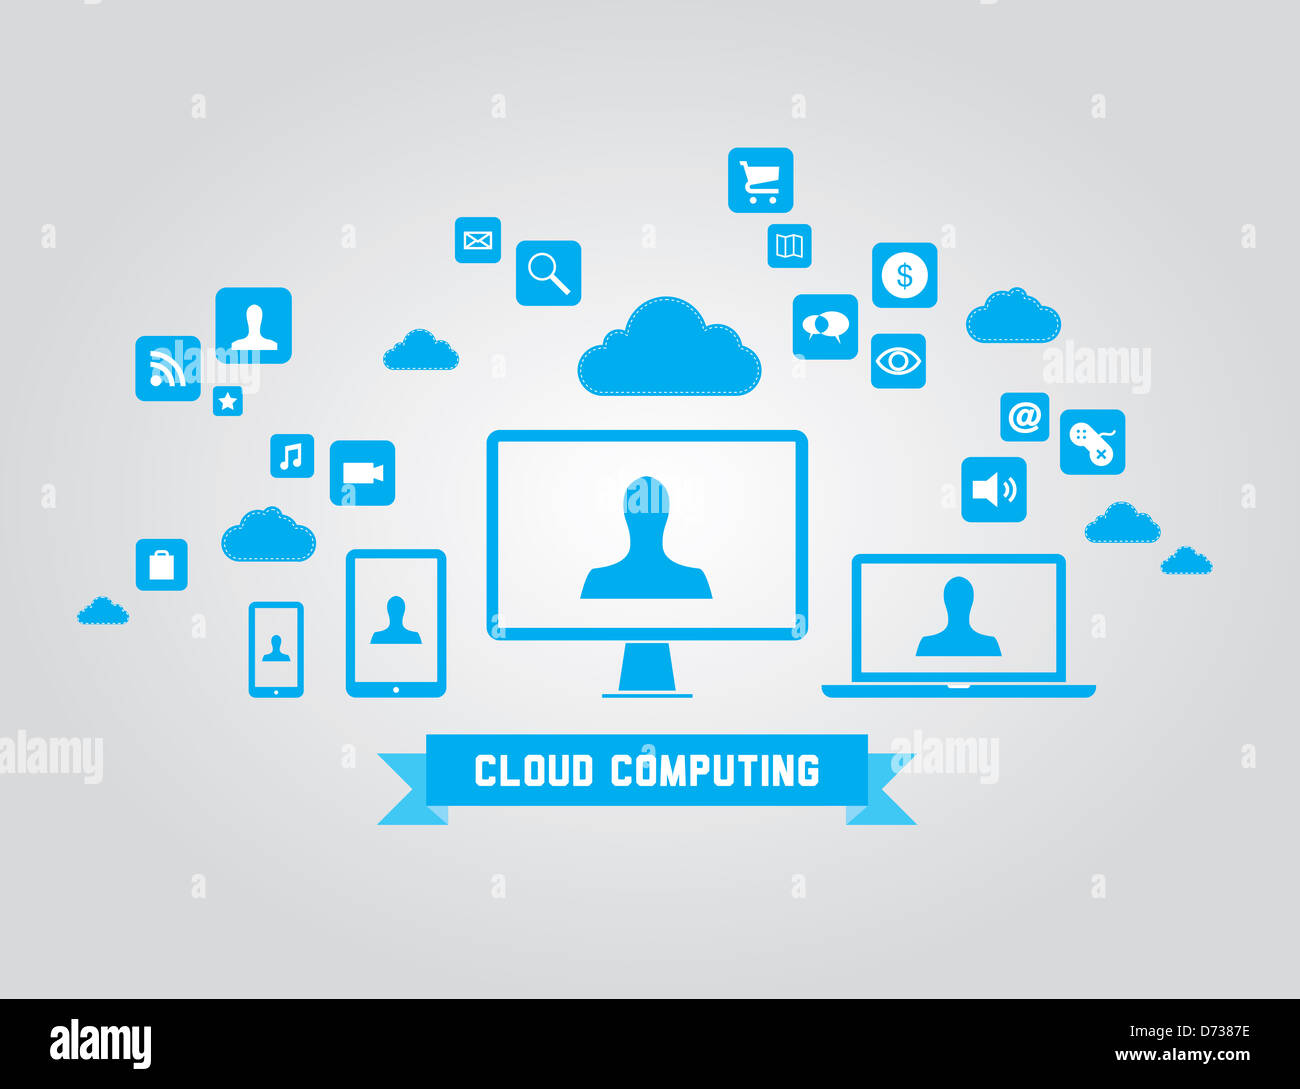 Illustration de la technologie cloud computing concept avec résumé d'icônes et d'éléments de conception. Isolé sur fond gris Banque D'Images